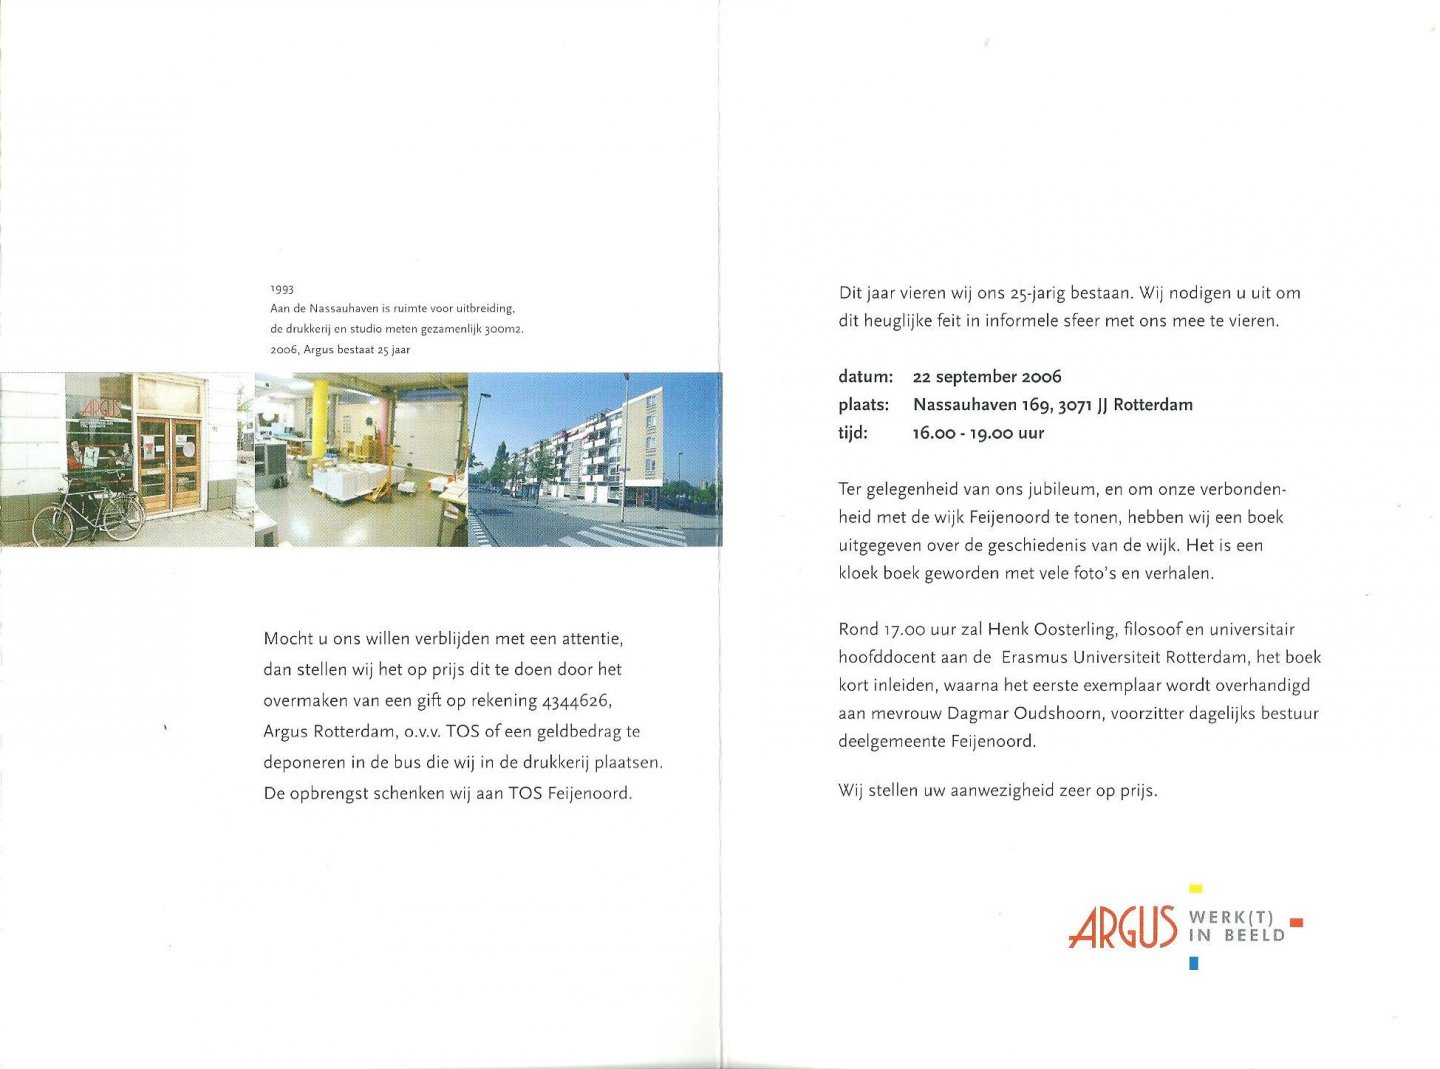 Argus - Argus 25 jaar : uitnodigingskaart viering 25-jarig bestaan 22-9-2006